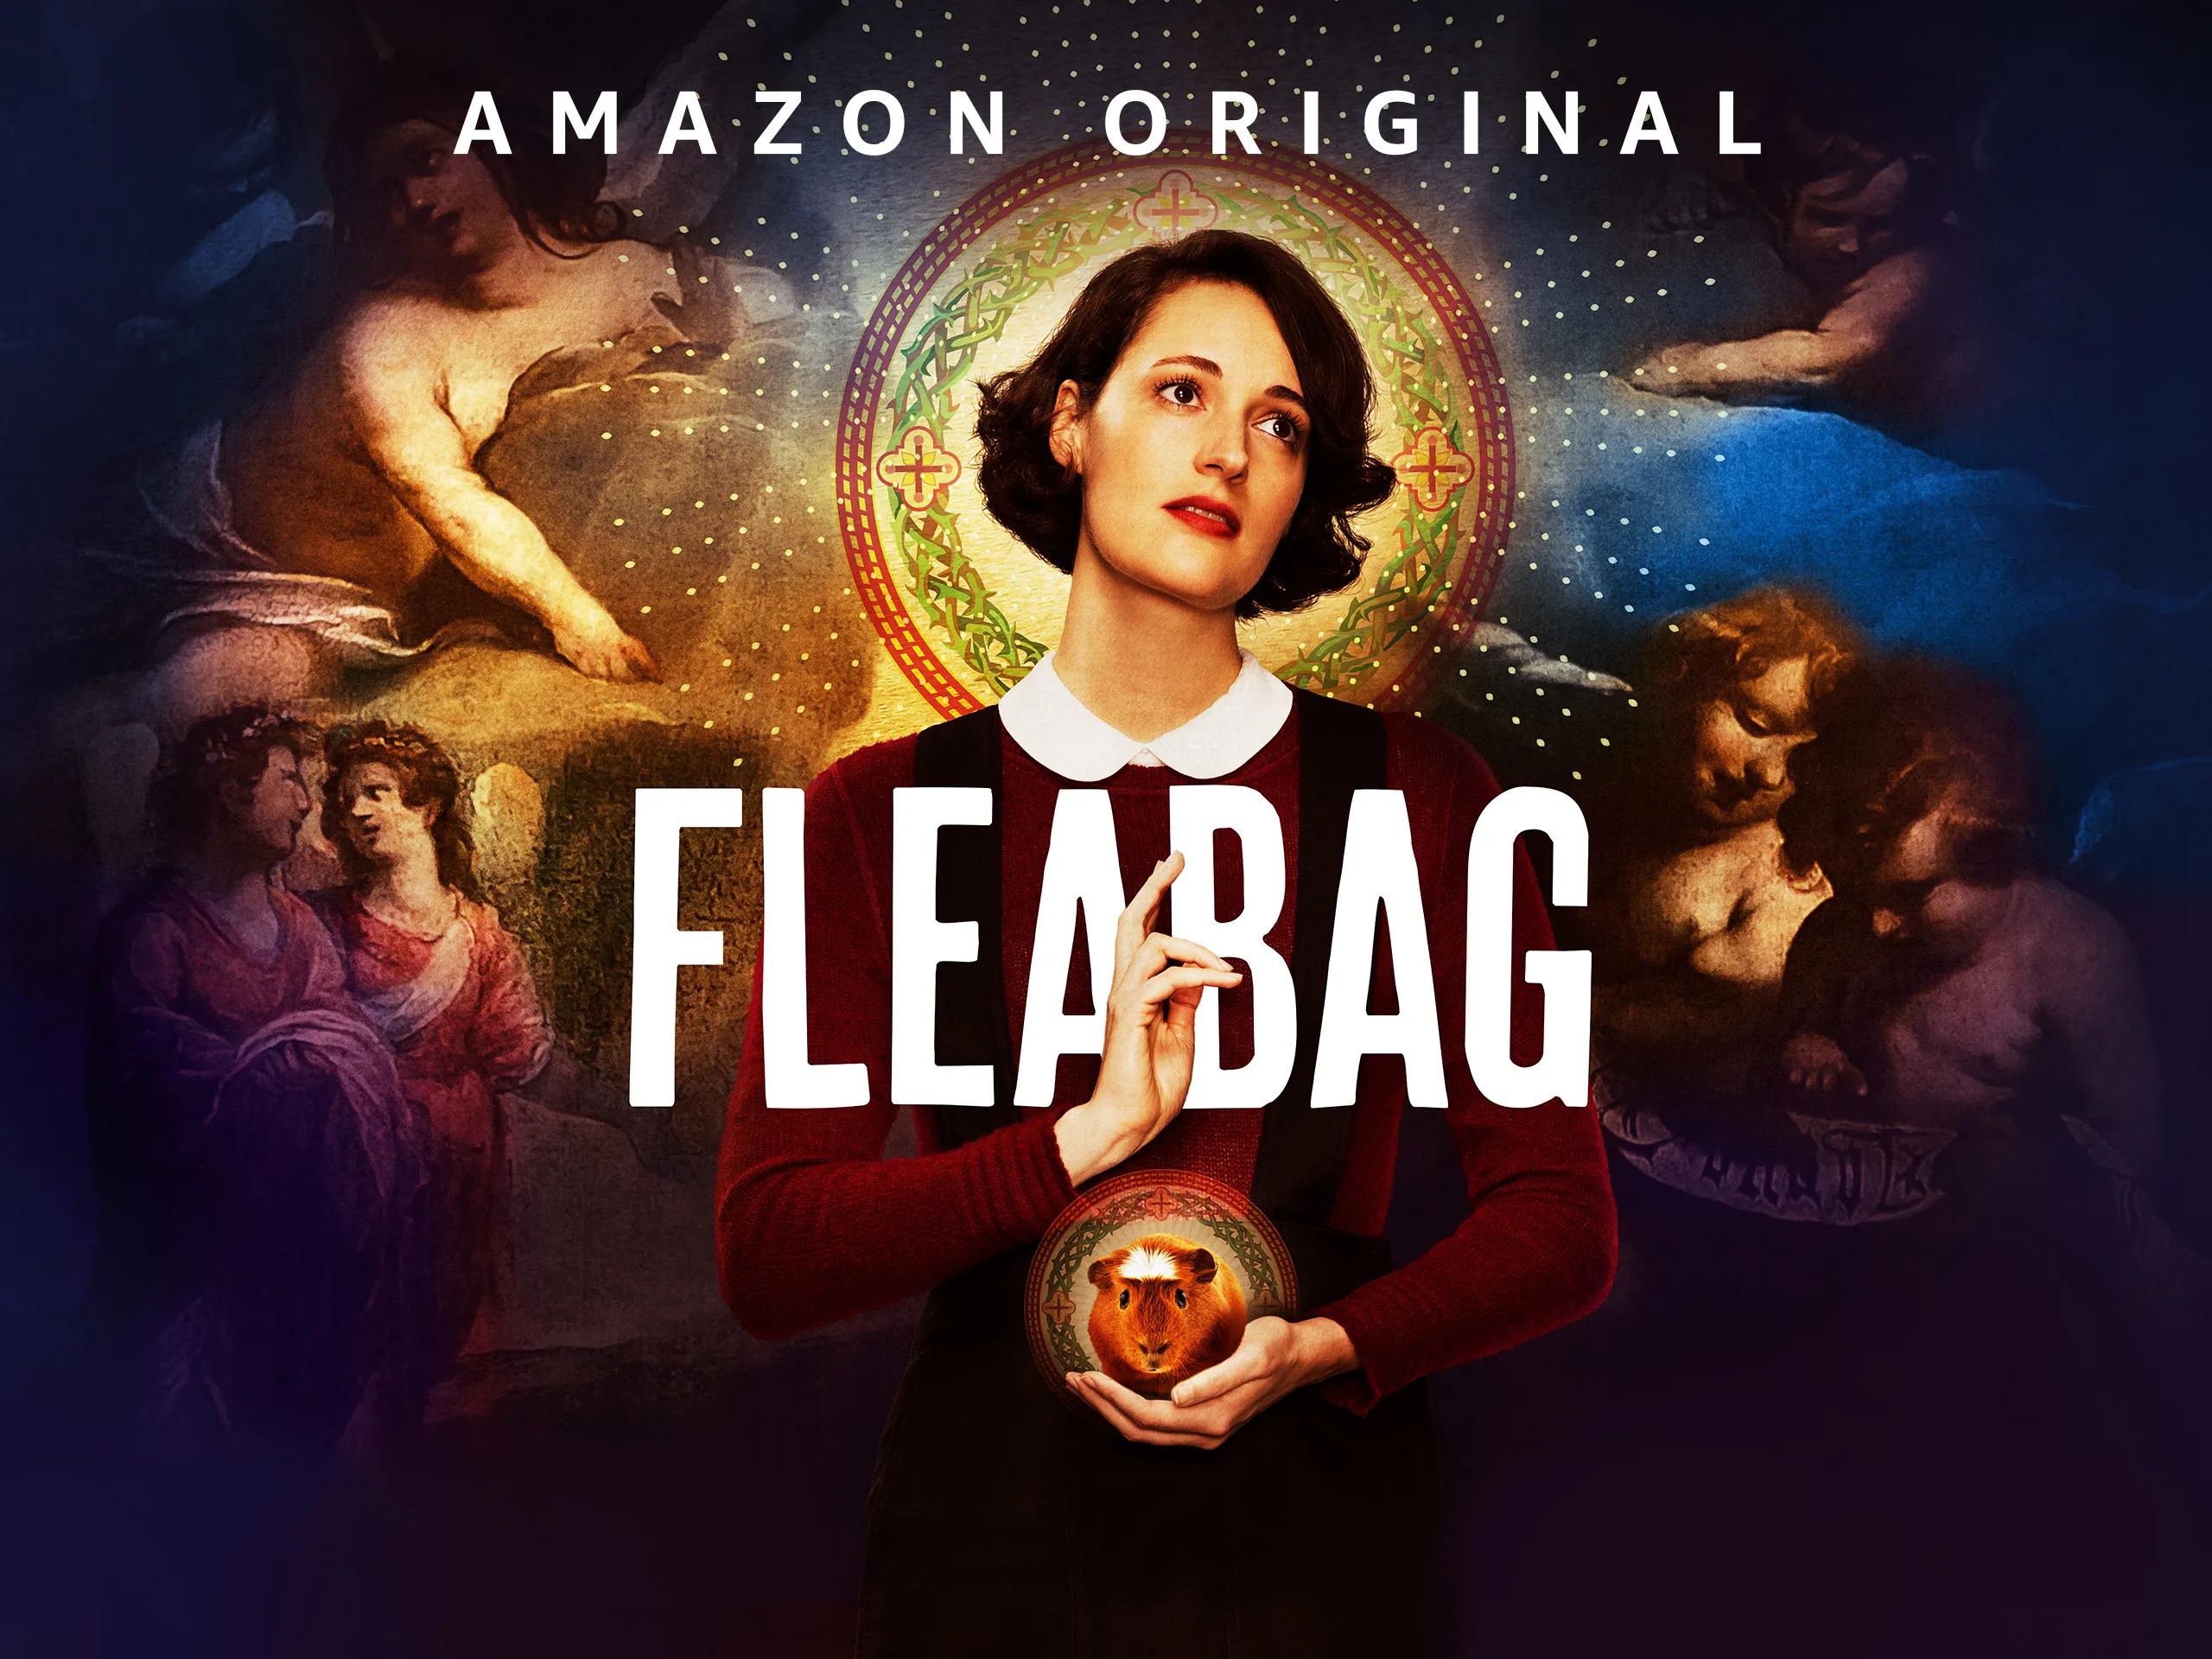 Fleabag Season 3 Release Date